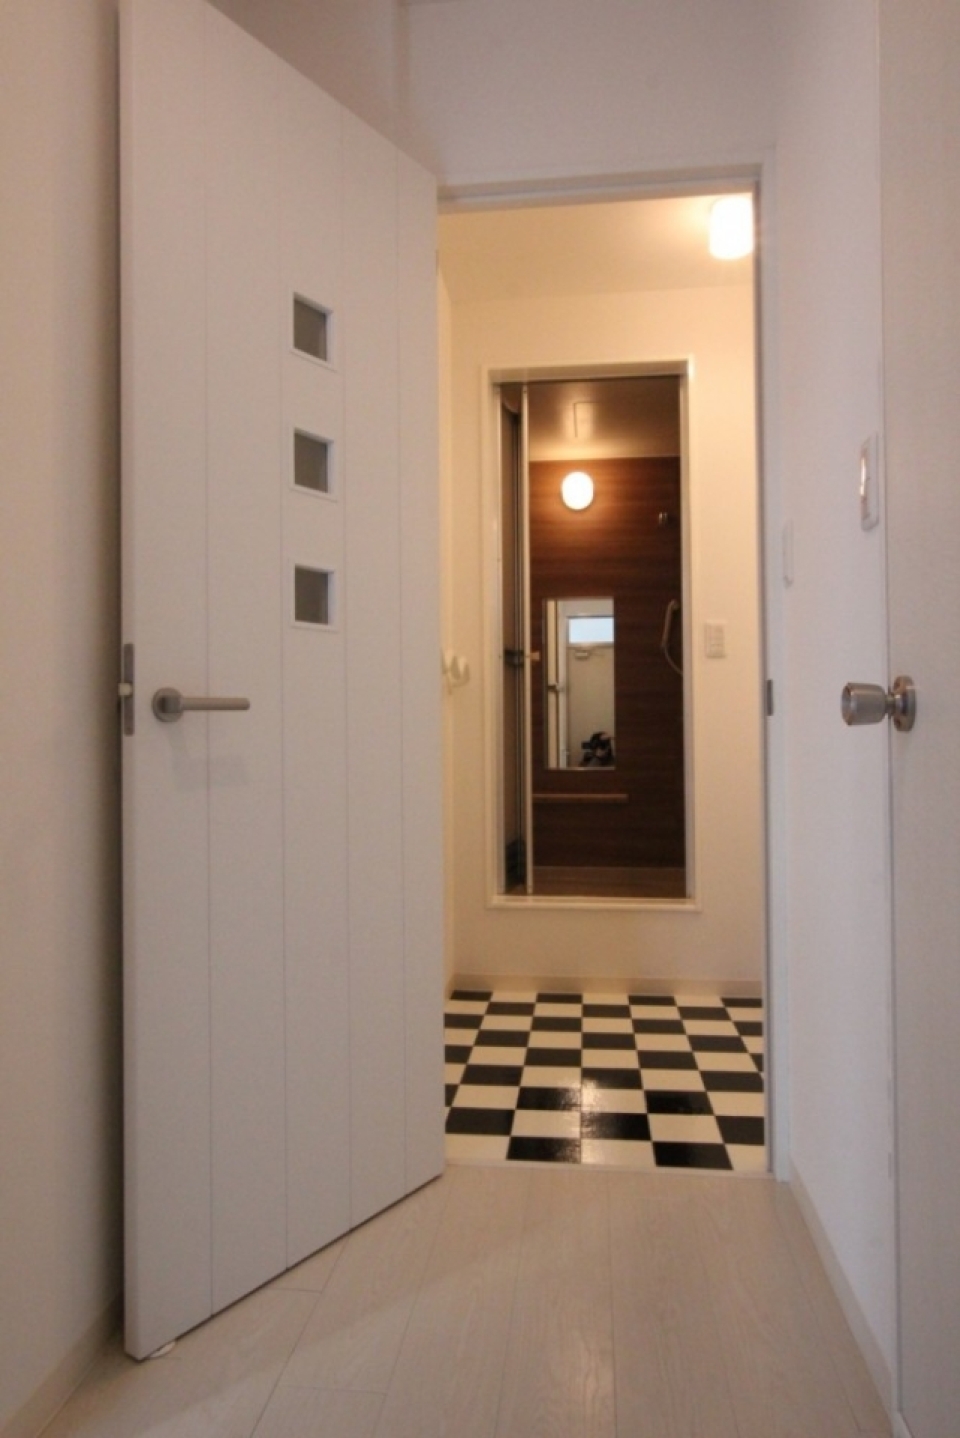 バスルームの床は、これまた白×黒のチェッカー柄。